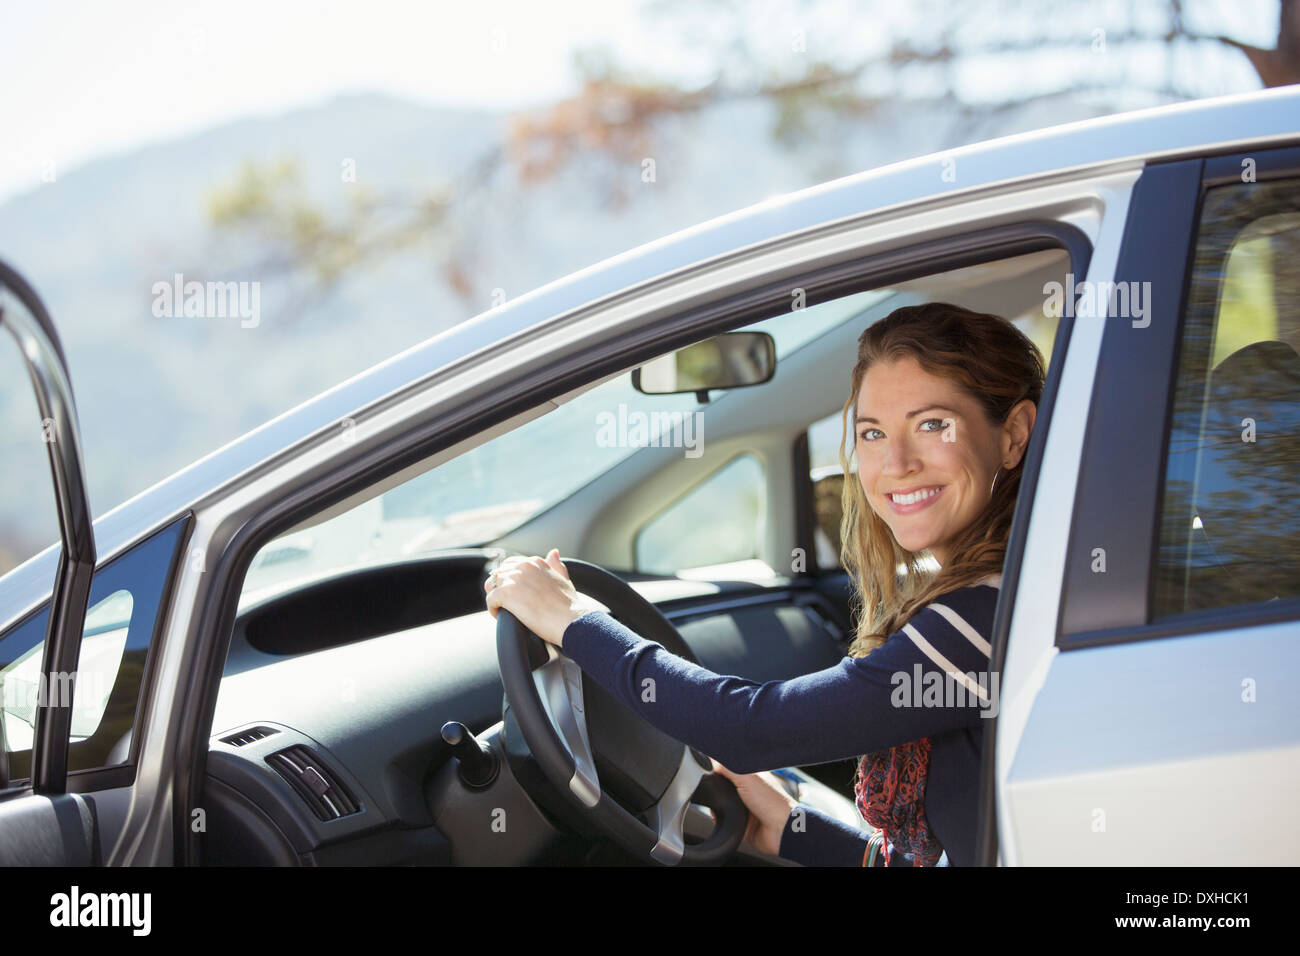 Portrait of confident woman inside car Stock Photo